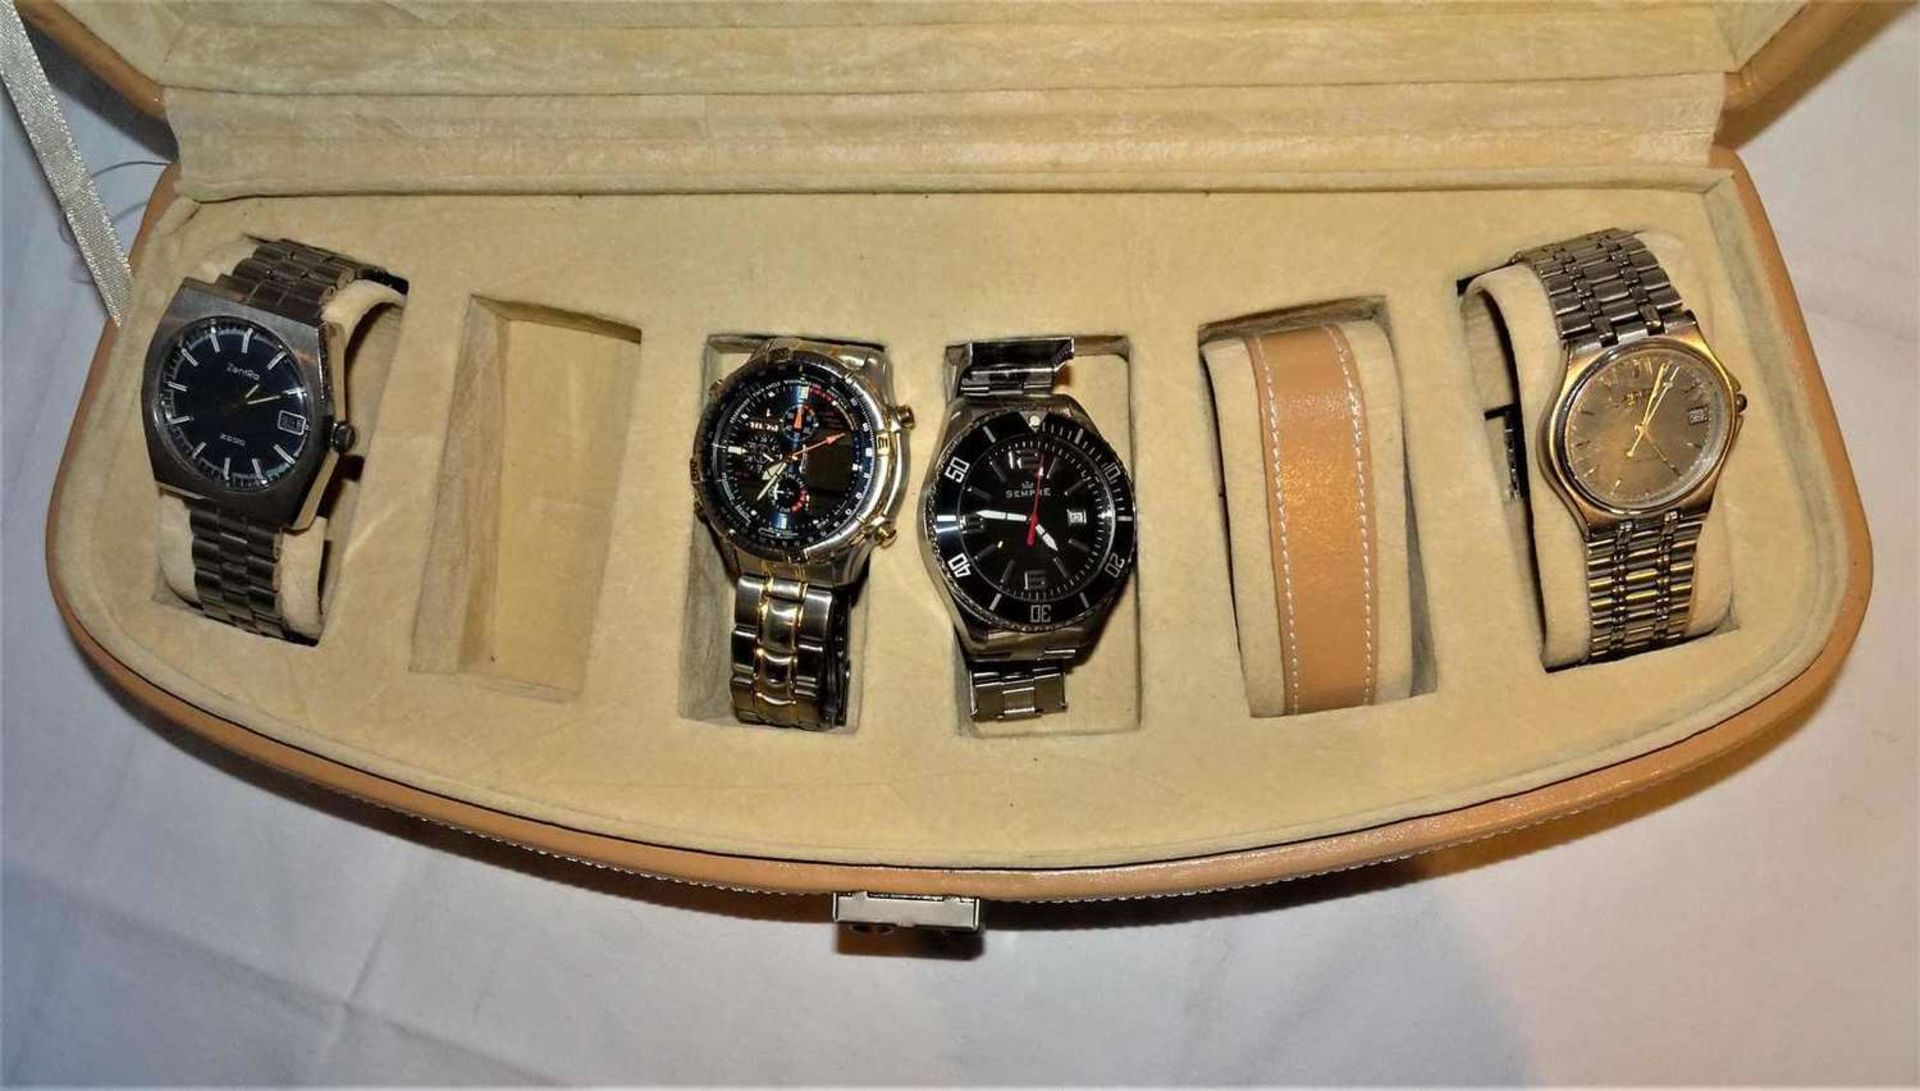 1 Uhrenbox, Inhalt mit 4 Herrenarmbanduhren, dabei eine Zentra 2000 / 1 Citizen Chrono / 1 Sempre, - Bild 2 aus 3